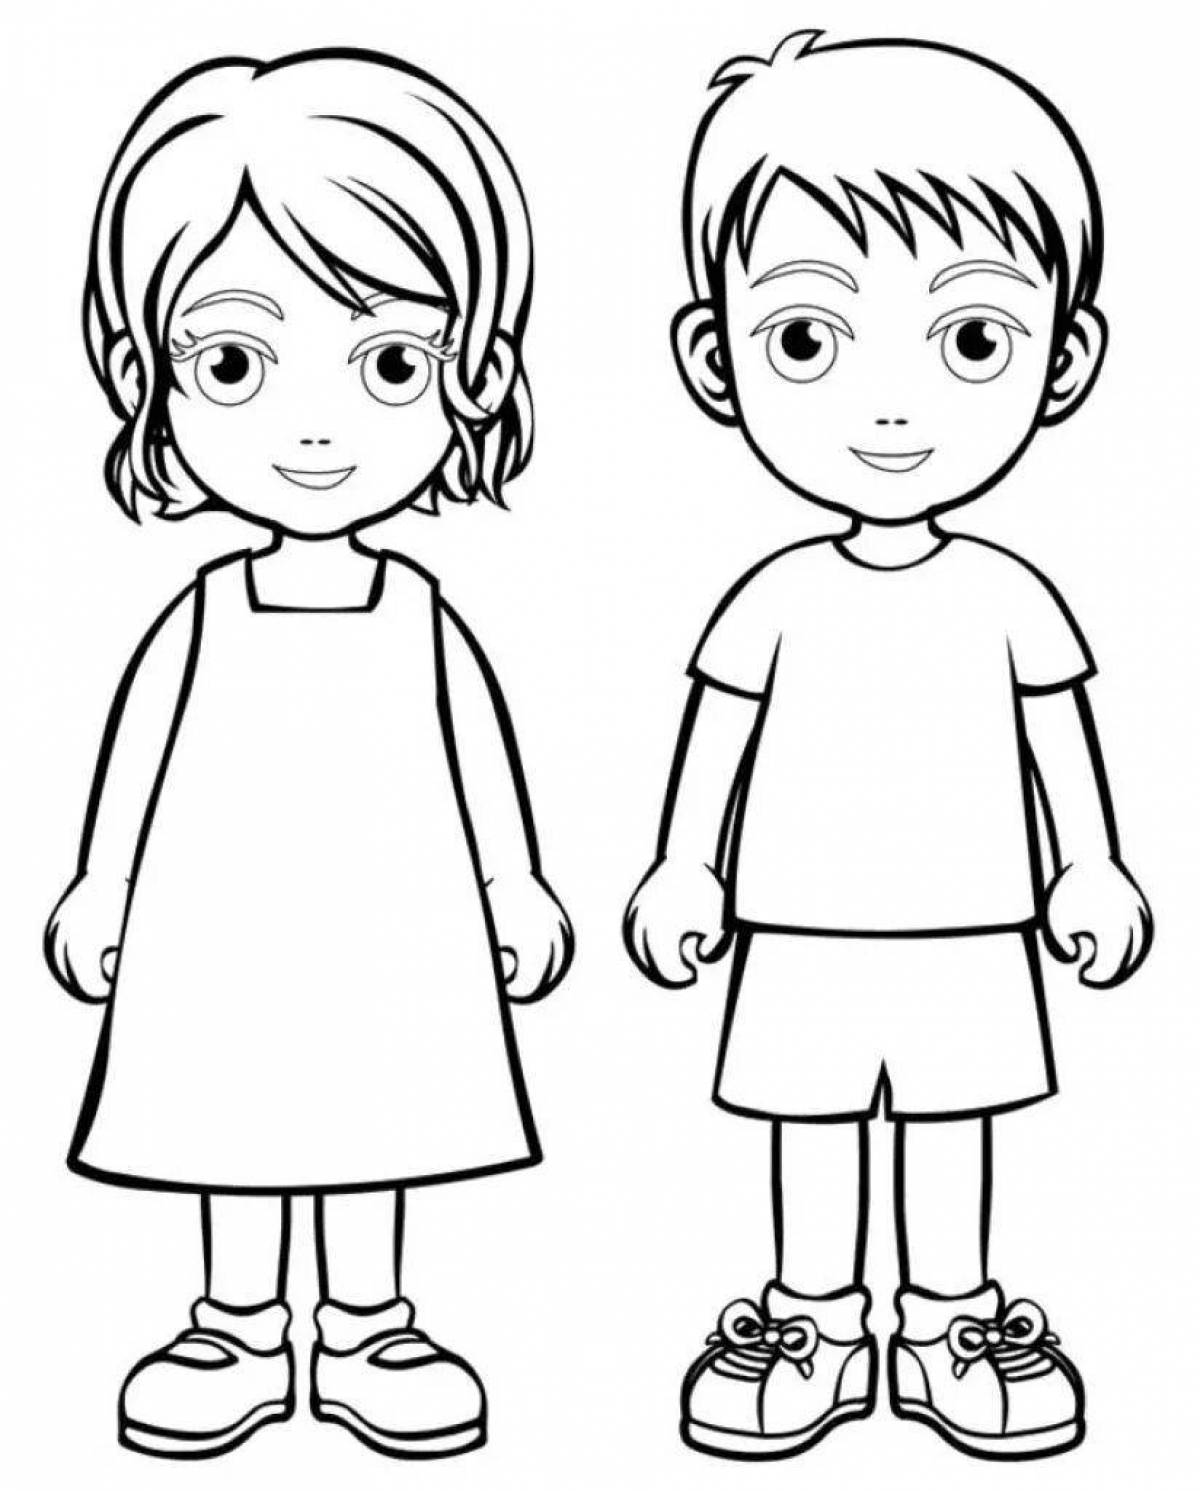 «Мальчик и девочка» бесплатная раскраска для детей - мальчиков и девочек